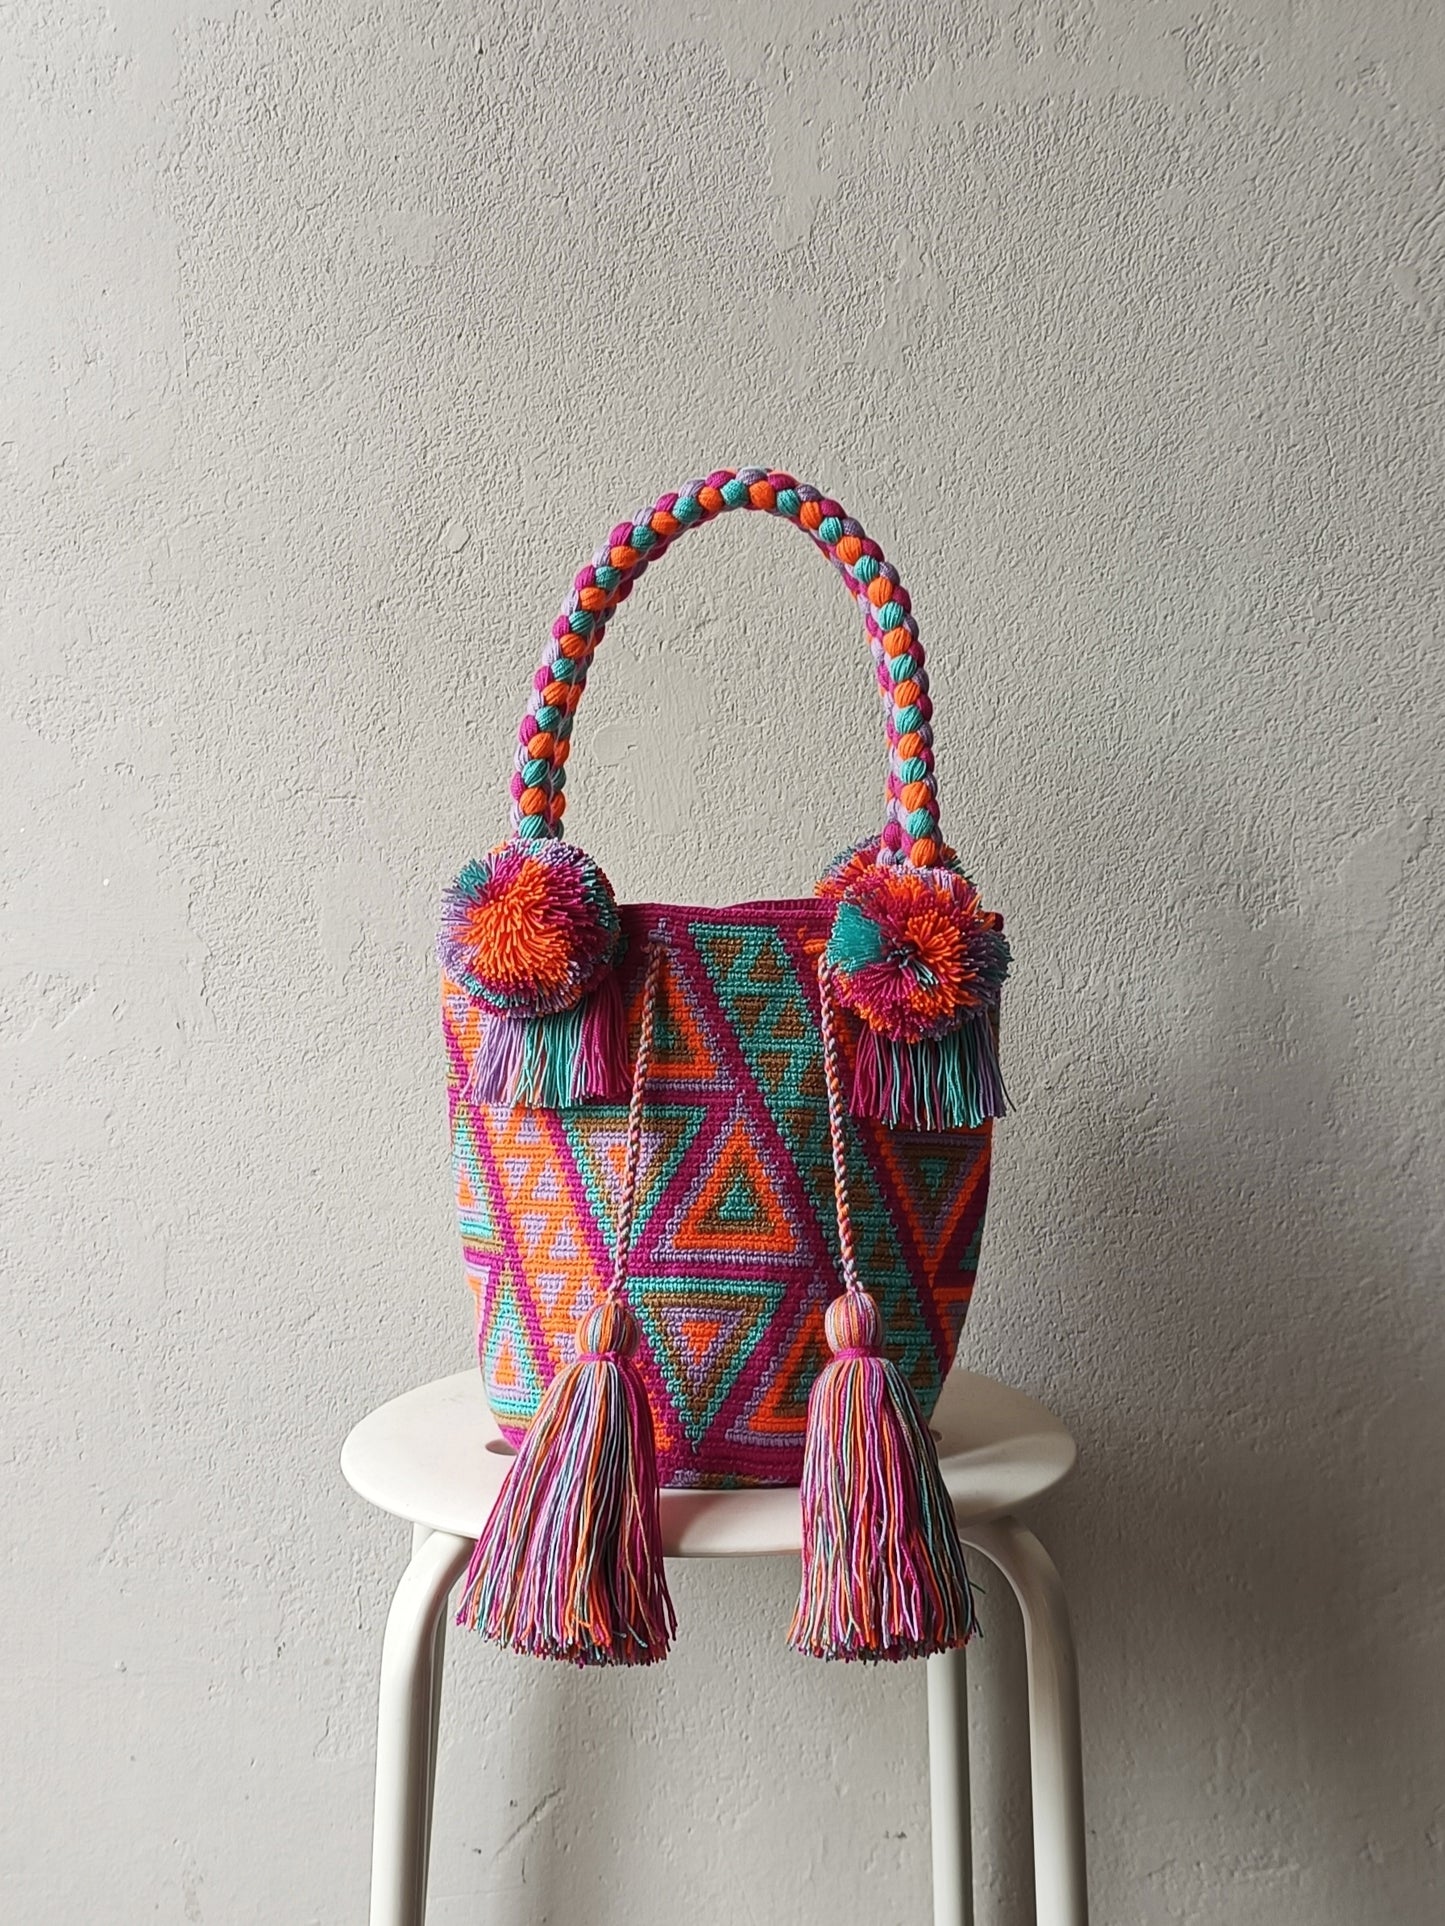 CAMPIONE - M mochila handbag in cyclamen pink and lilac